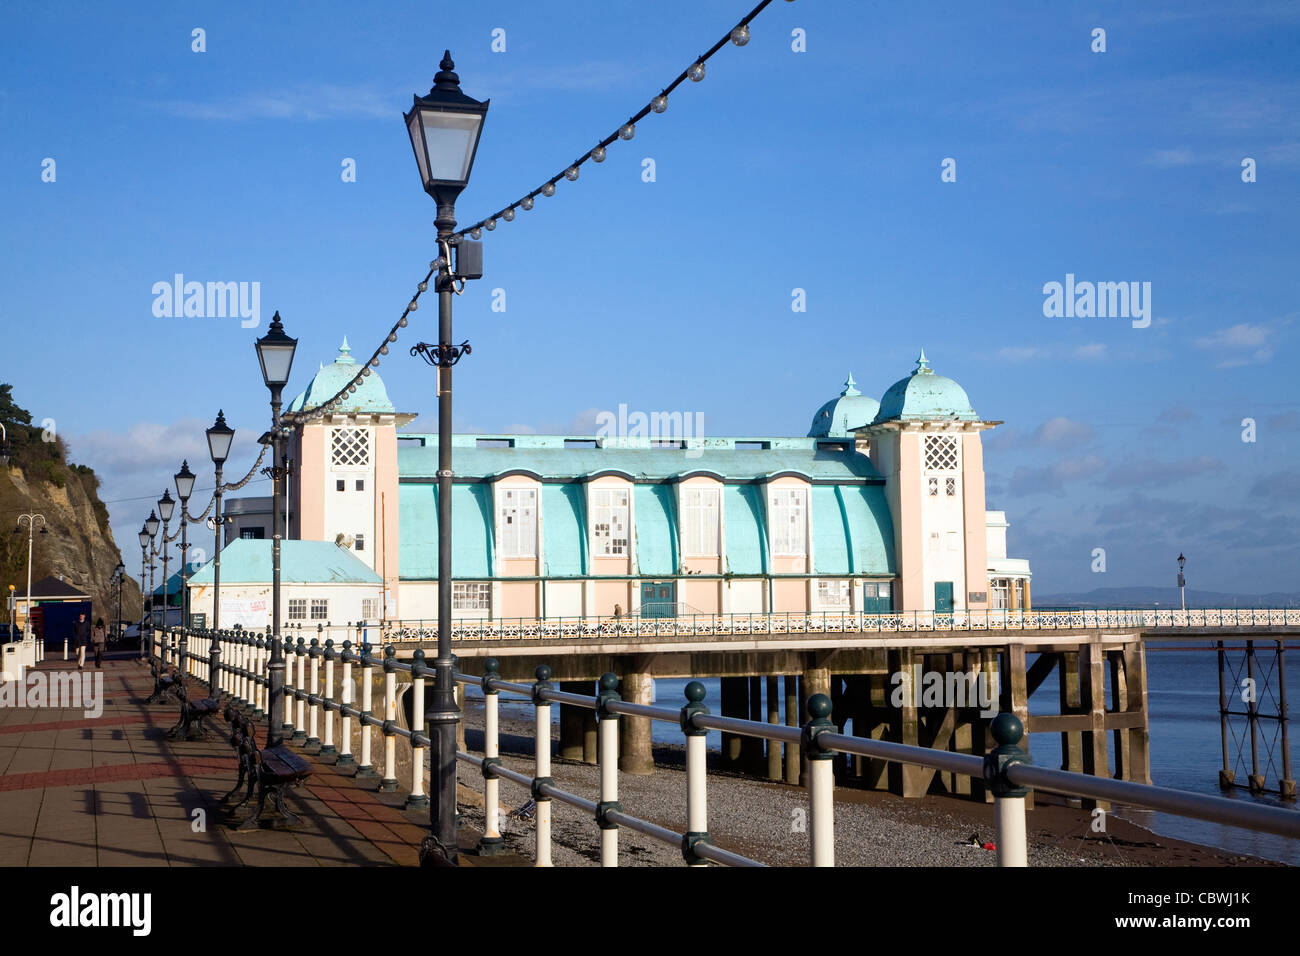 Promenade, pier and beach in winter, Penarth, Wales Stock Photo